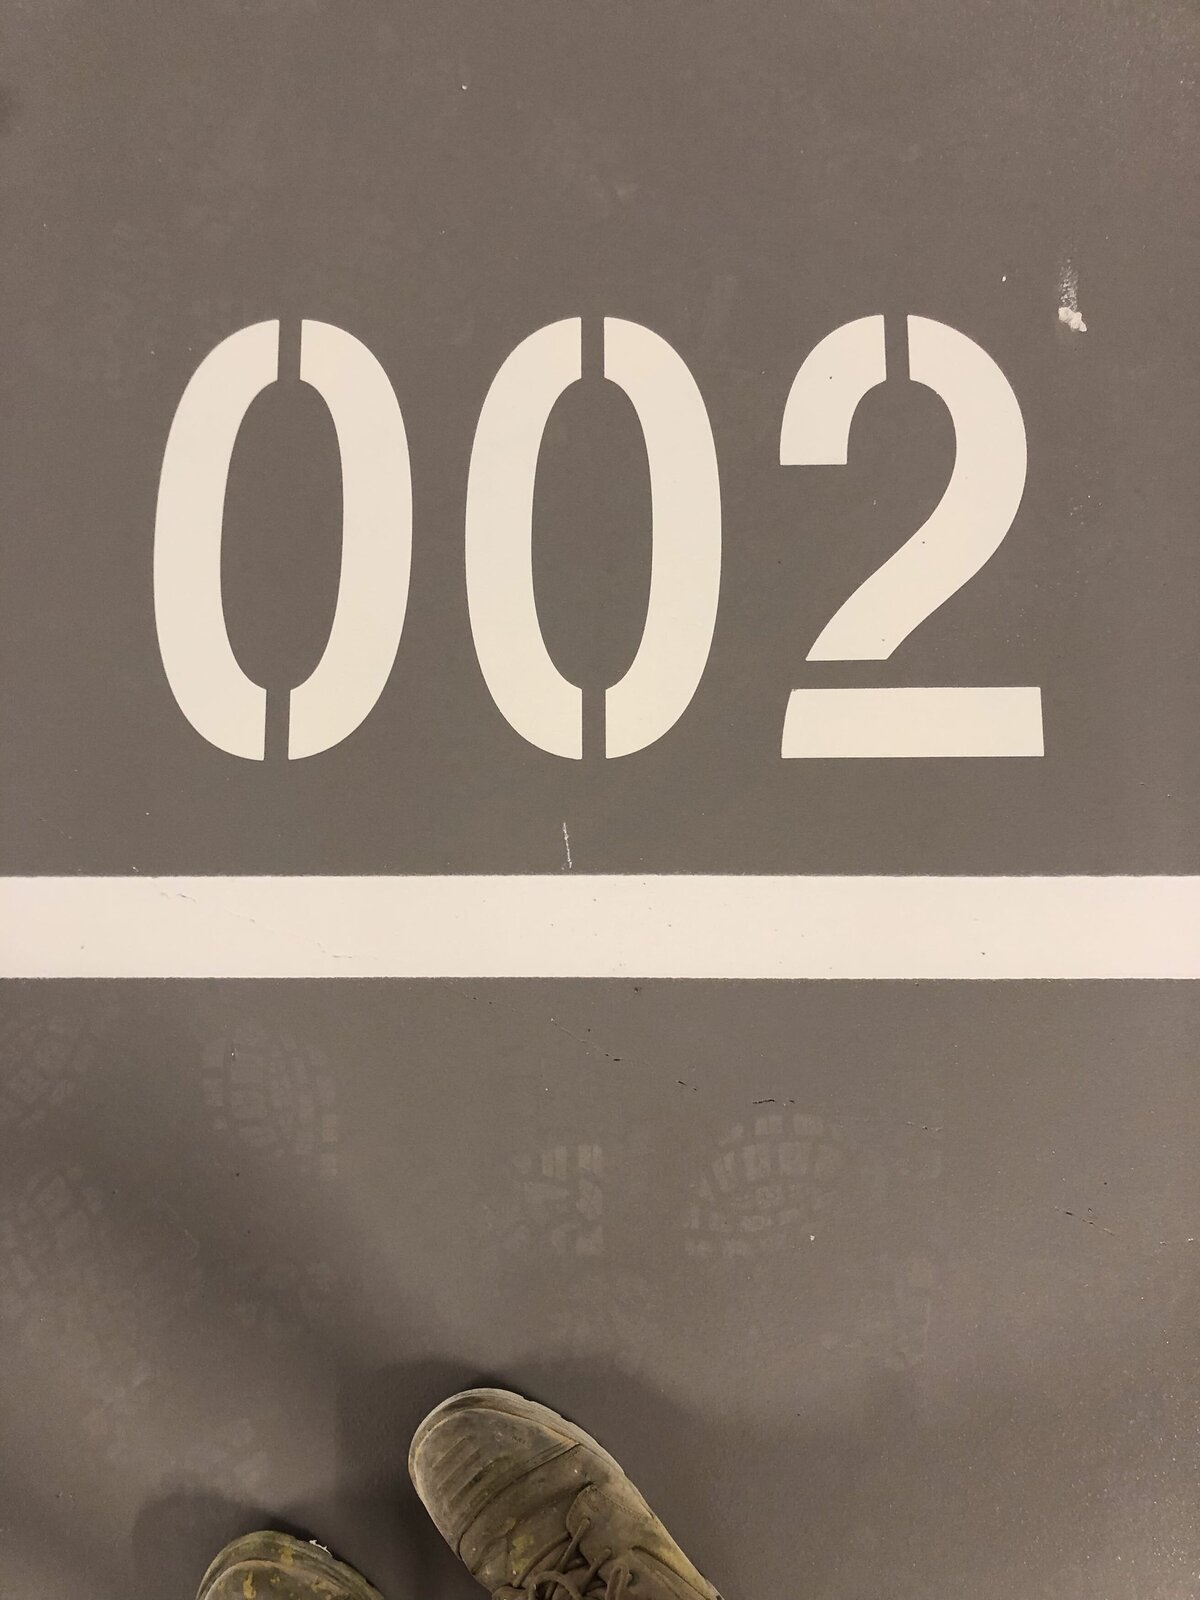 Car parking line marking numbering.